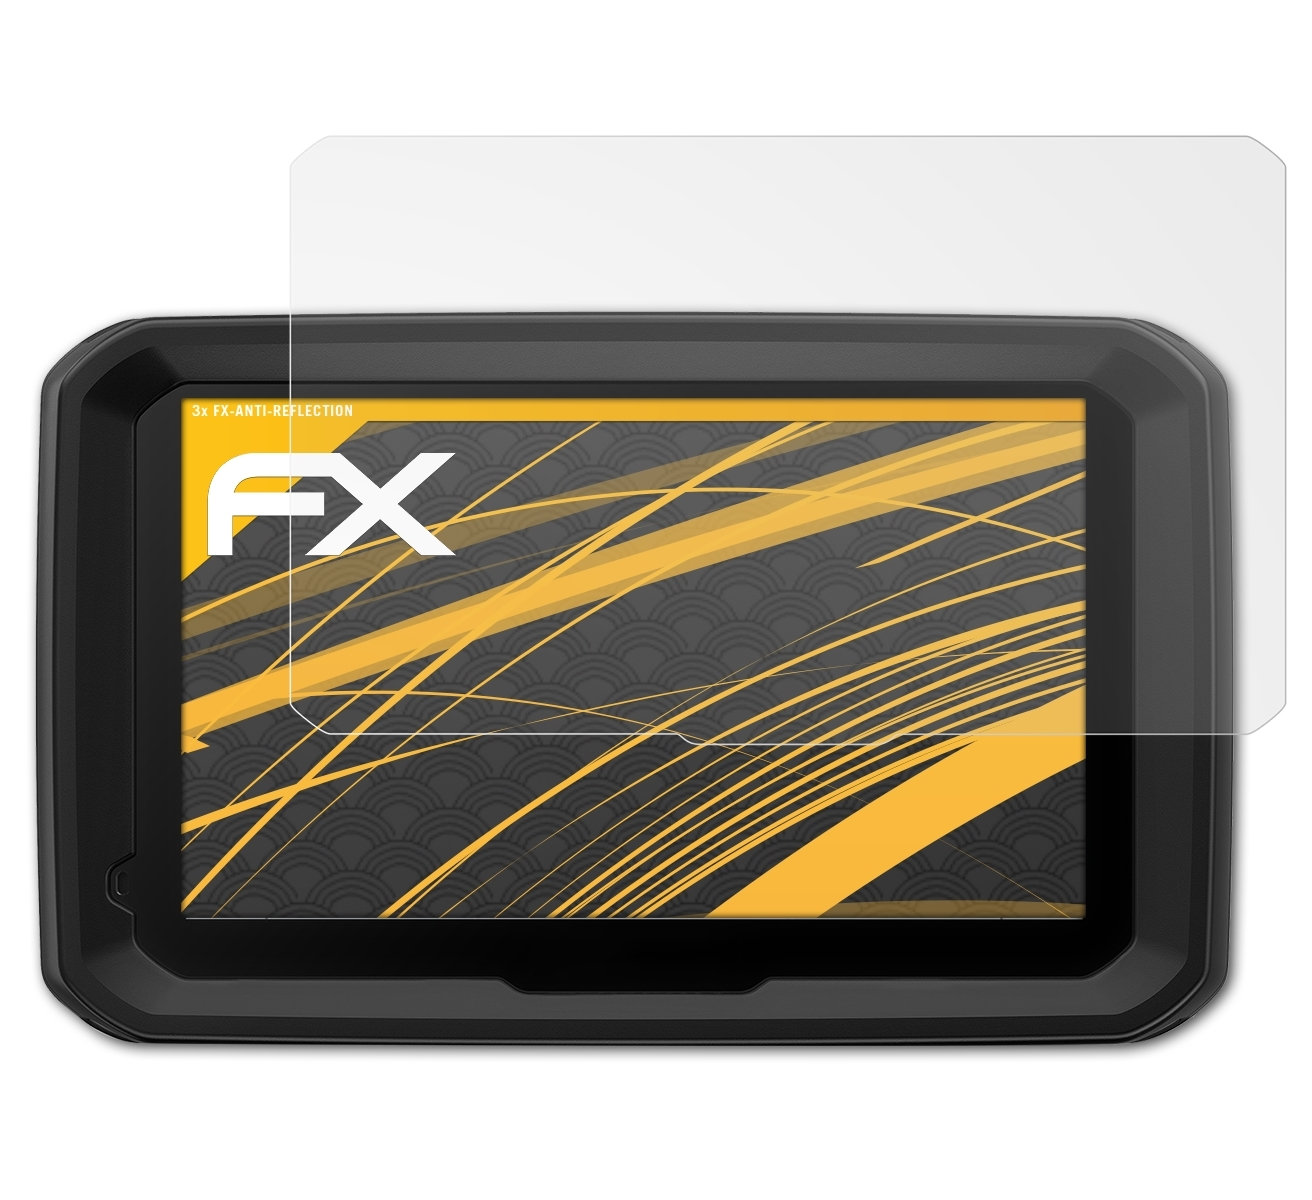 FX-Antireflex ATFOLIX Garmin 3x 580 LMT-D) dezl Displayschutz(für